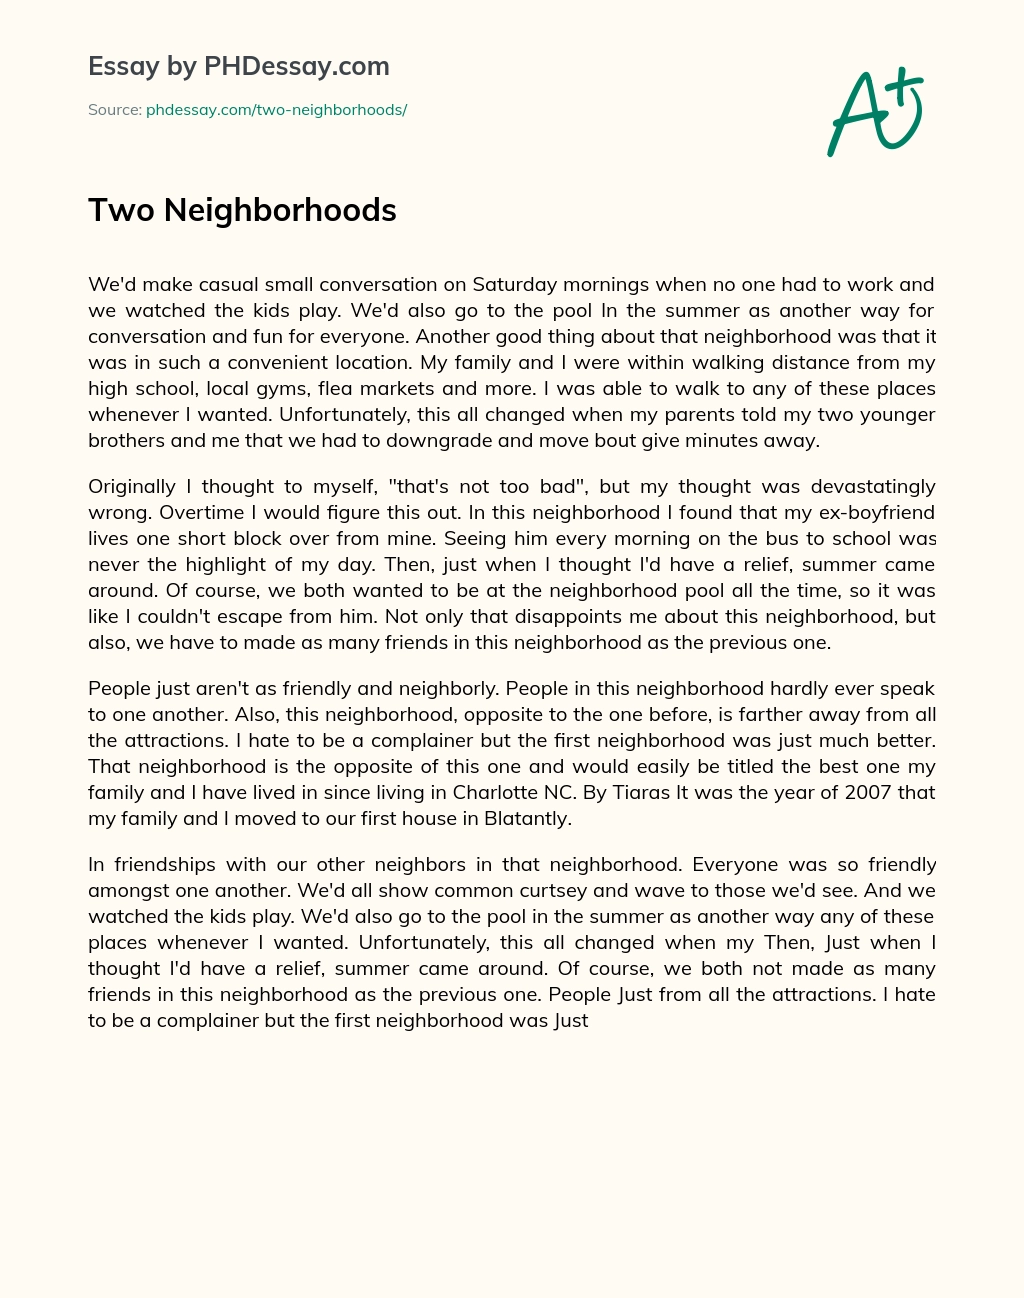 Two Neighborhoods essay